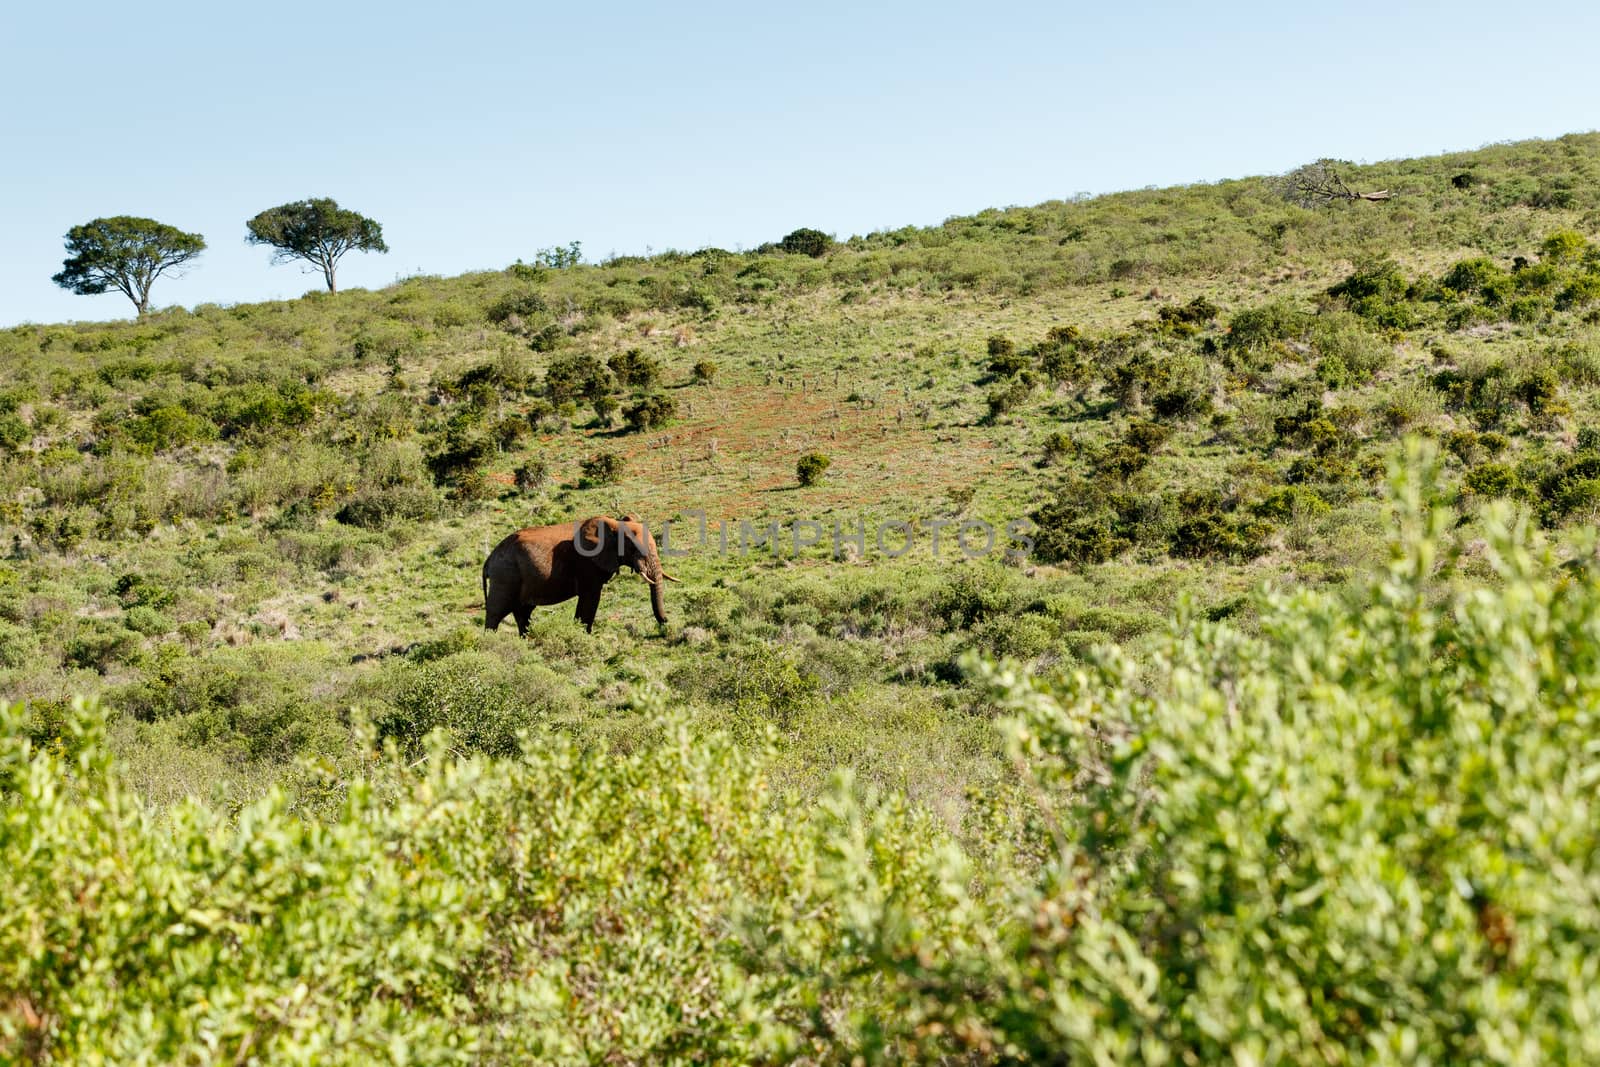 Bush Elephant walking uphill in the big field.